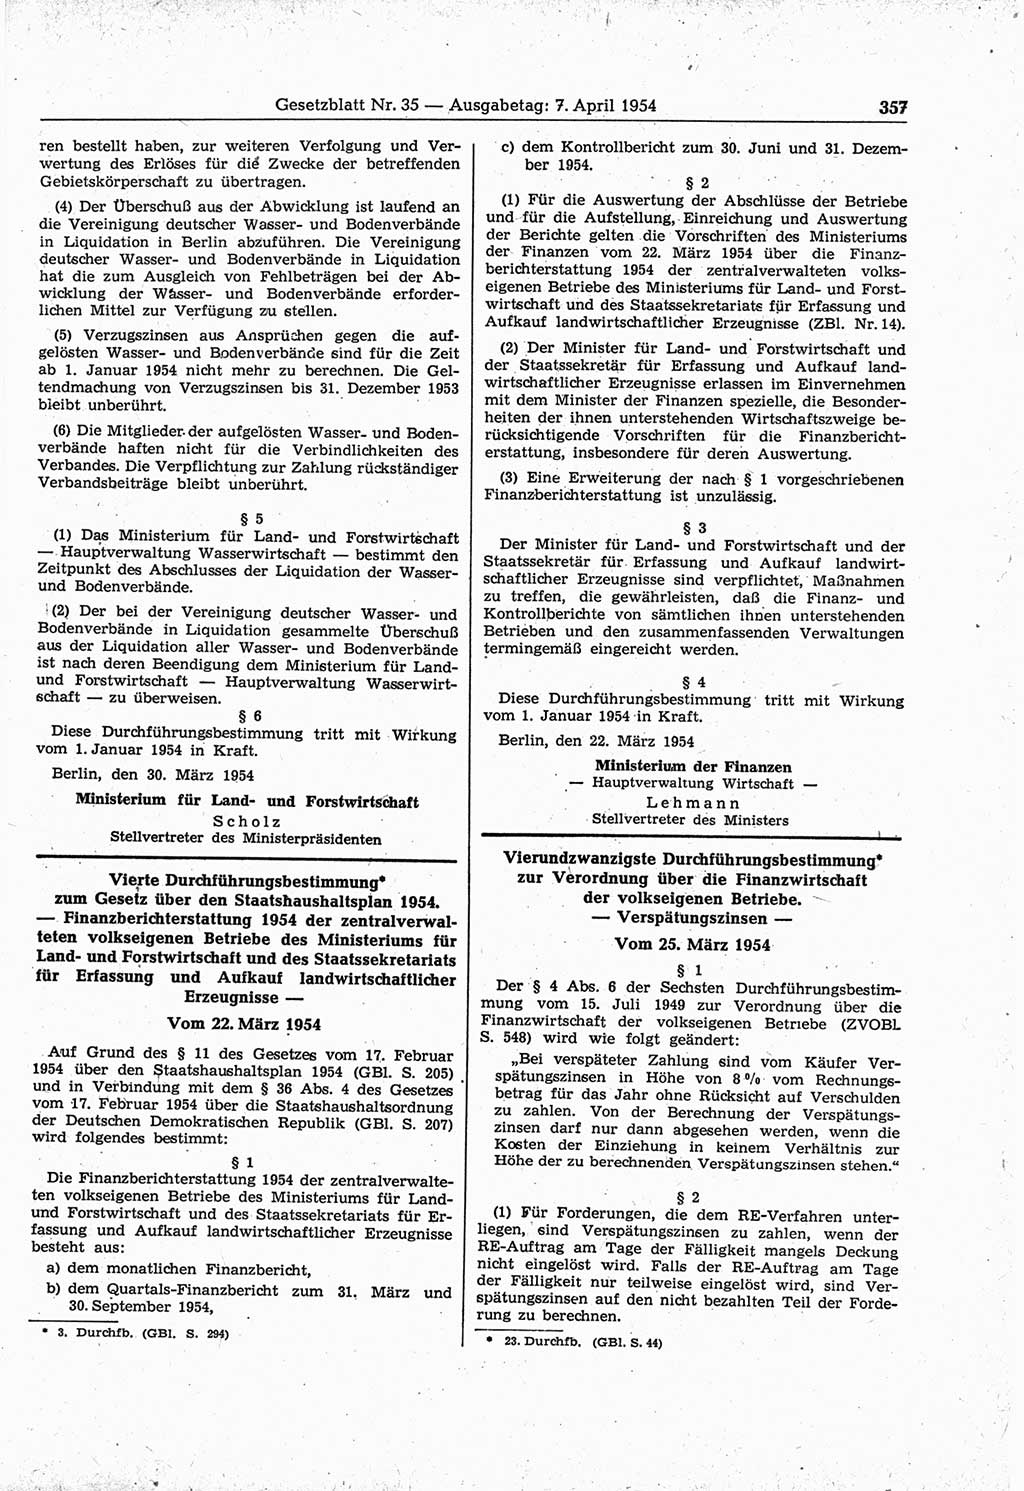 Gesetzblatt (GBl.) der Deutschen Demokratischen Republik (DDR) 1954, Seite 357 (GBl. DDR 1954, S. 357)